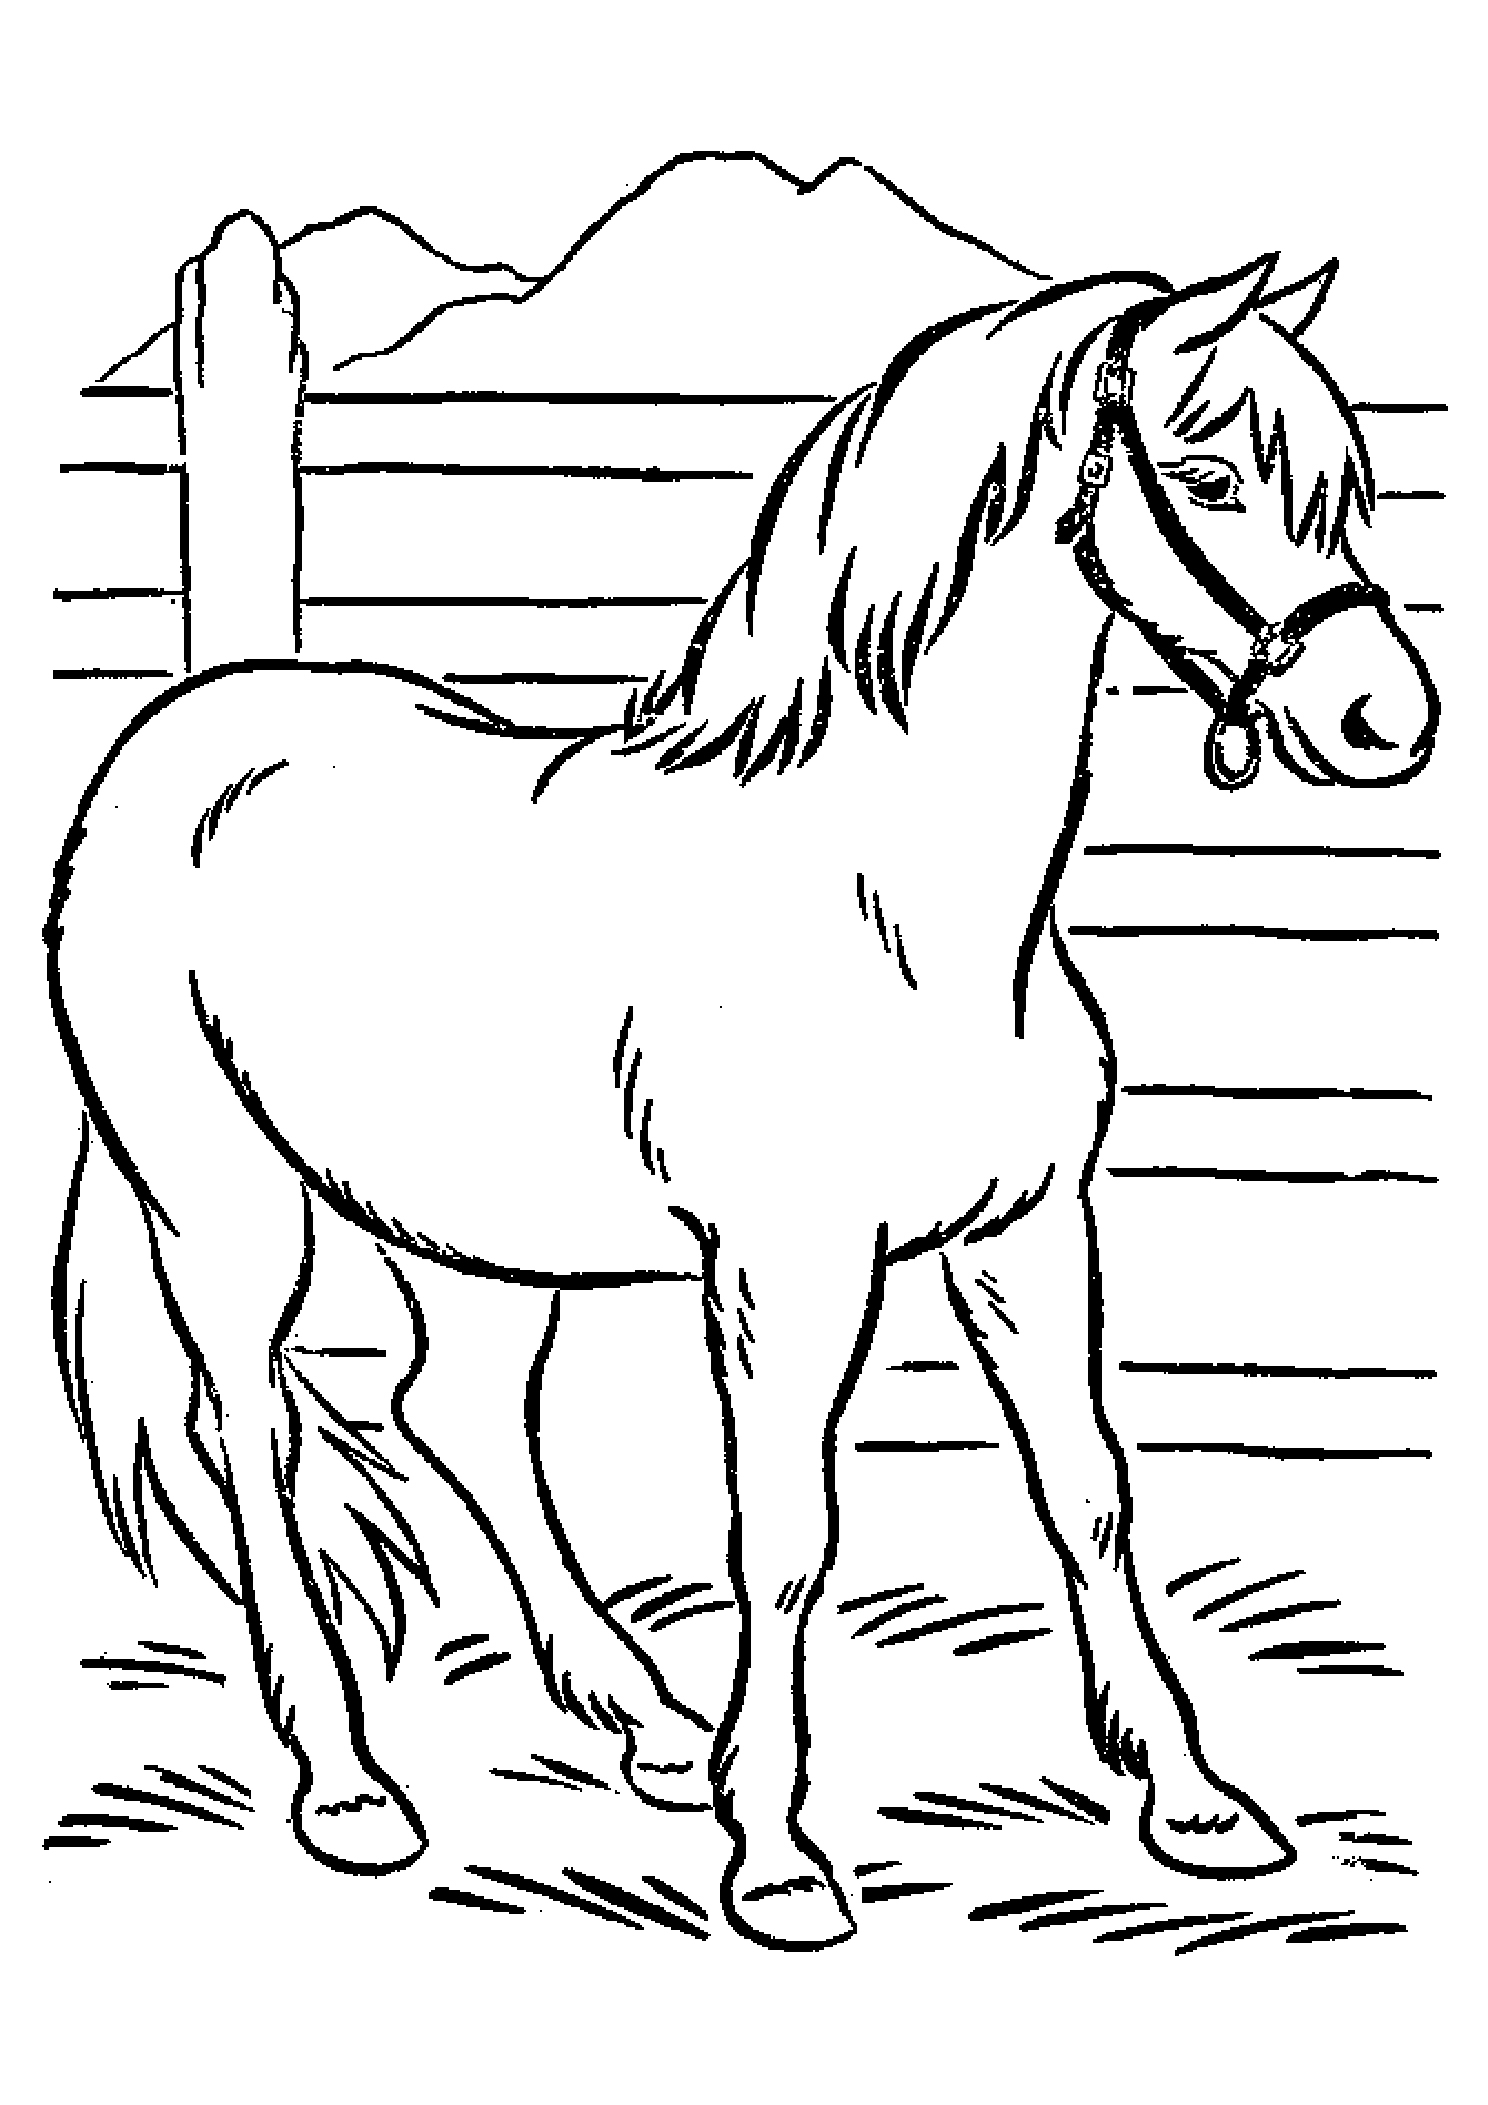 Раскрасить лошадку. Раскраска. Лошади. Лошадка раскраска для детей. Лошадь раскраска для детей. Рисунок лошади для раскрашивания.